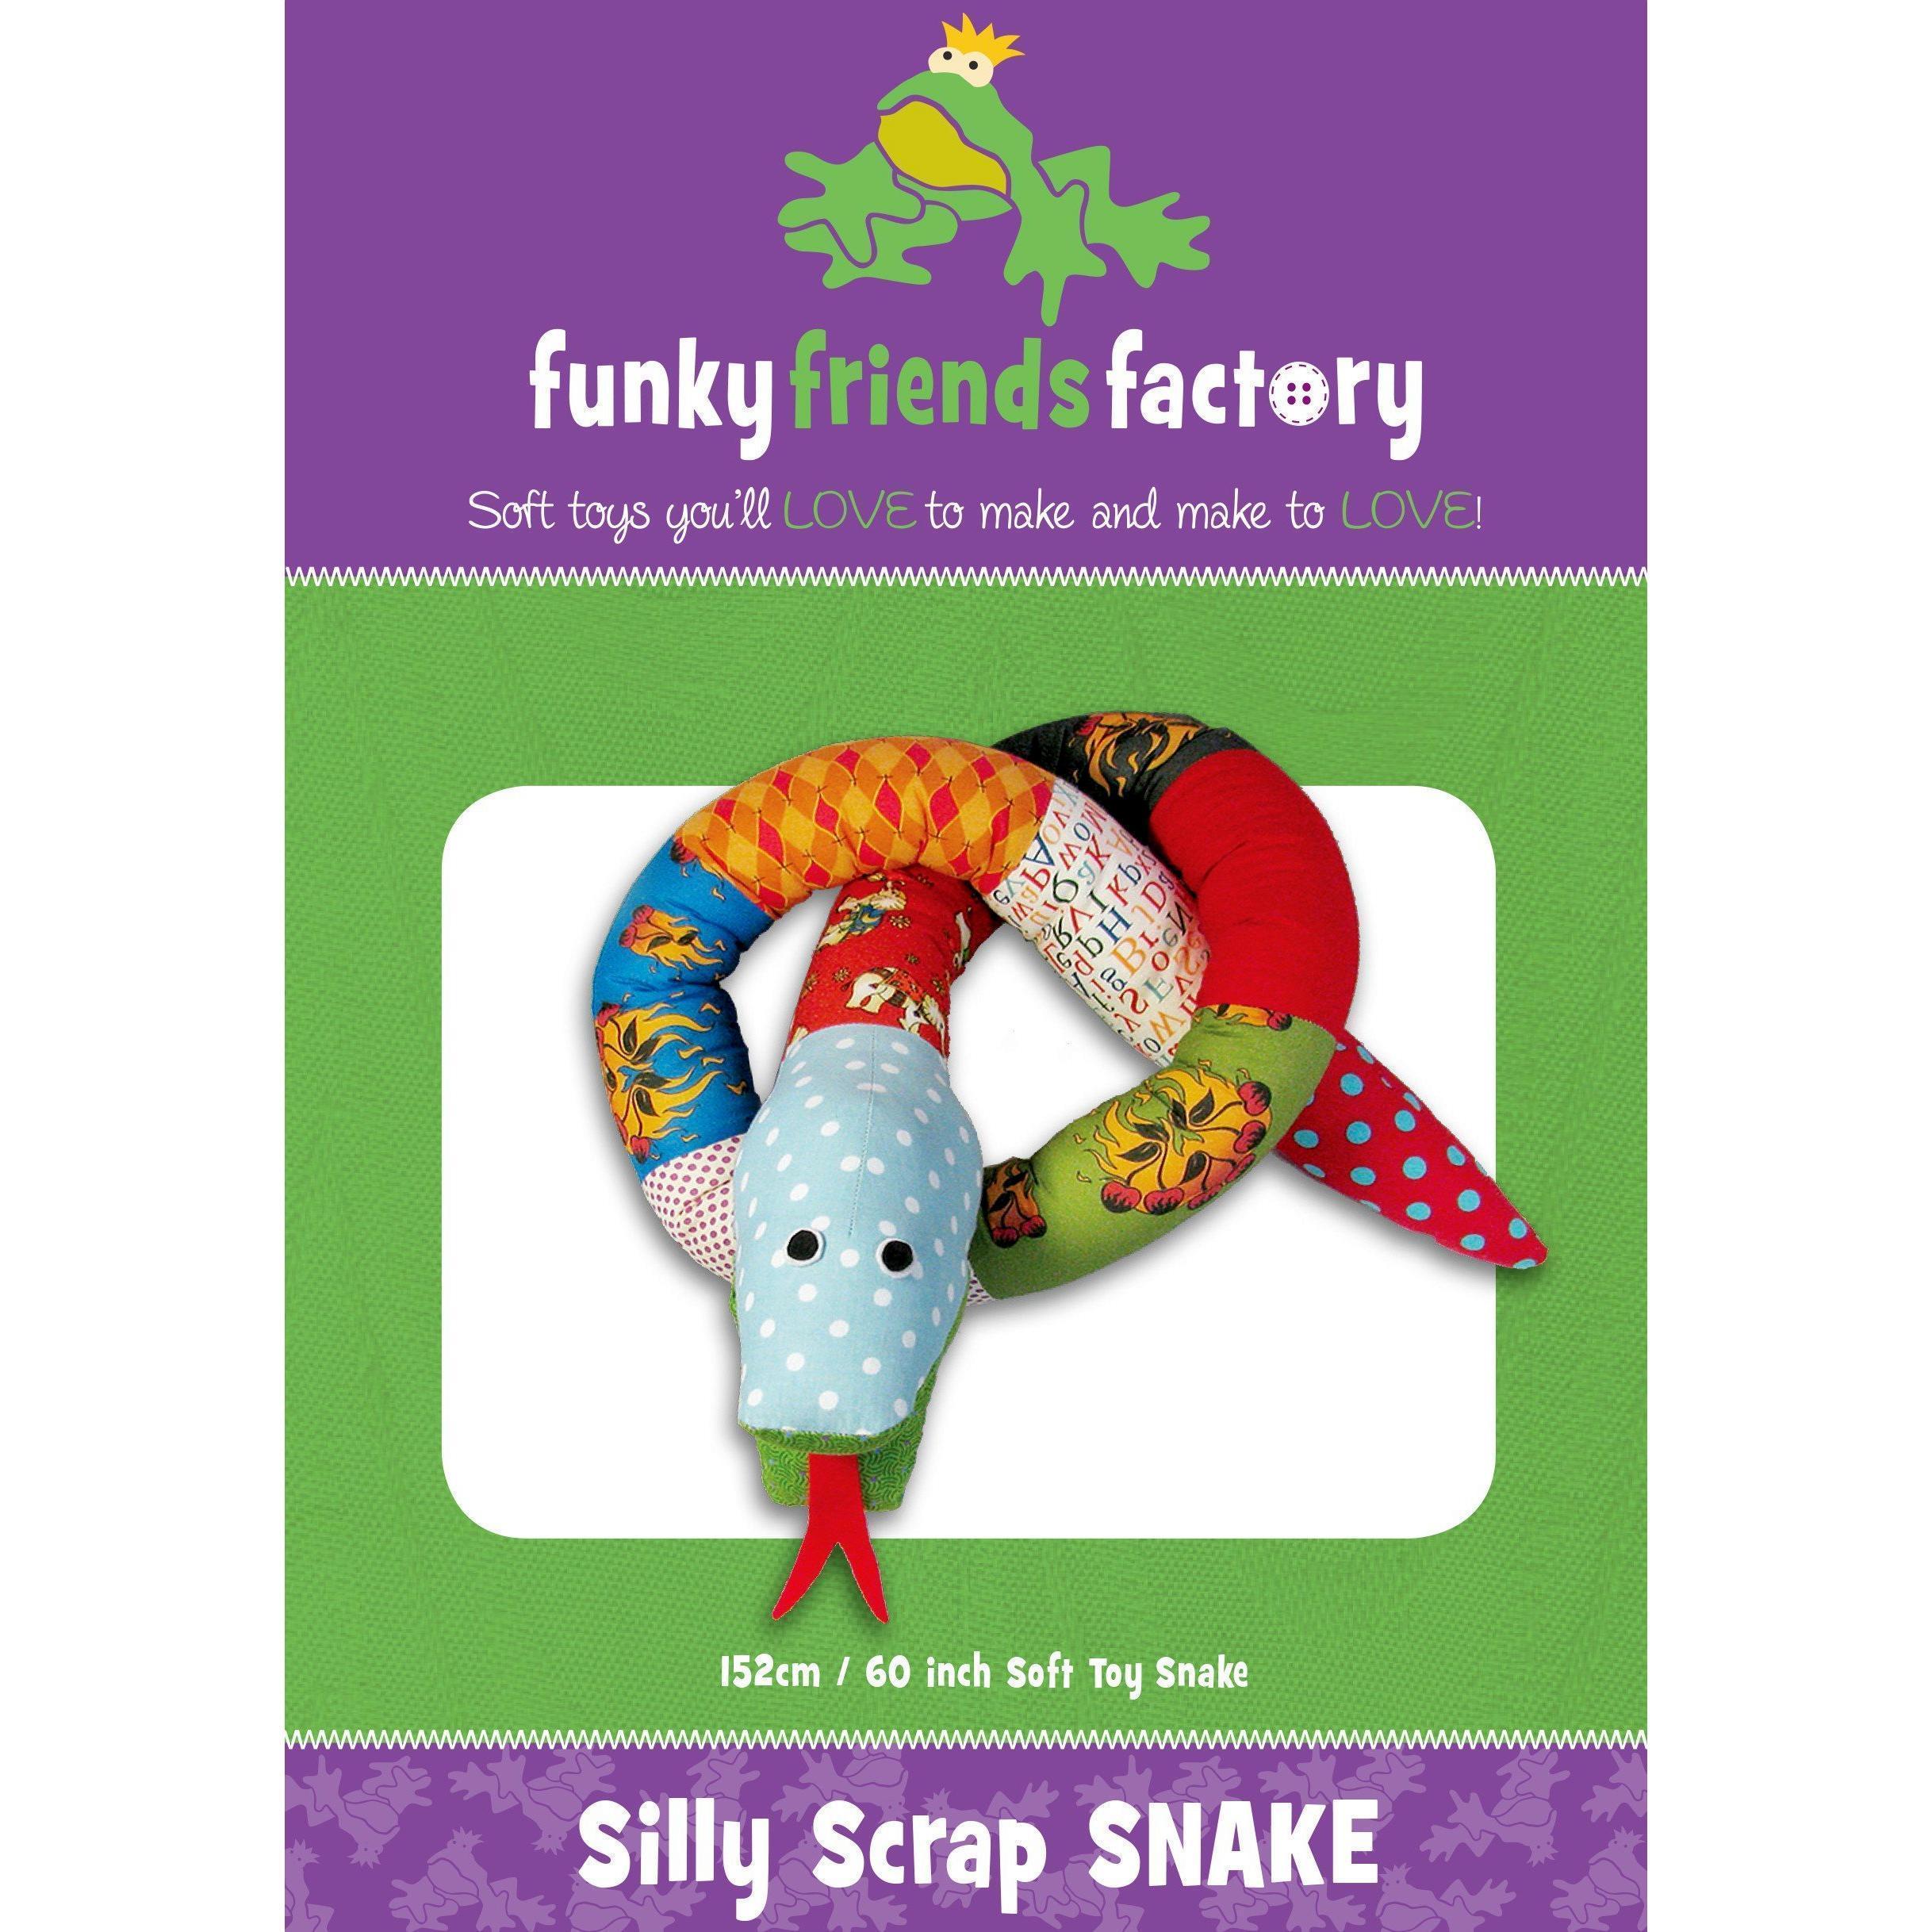 Silly Scrap Snake Funky Friends Factory Pattern